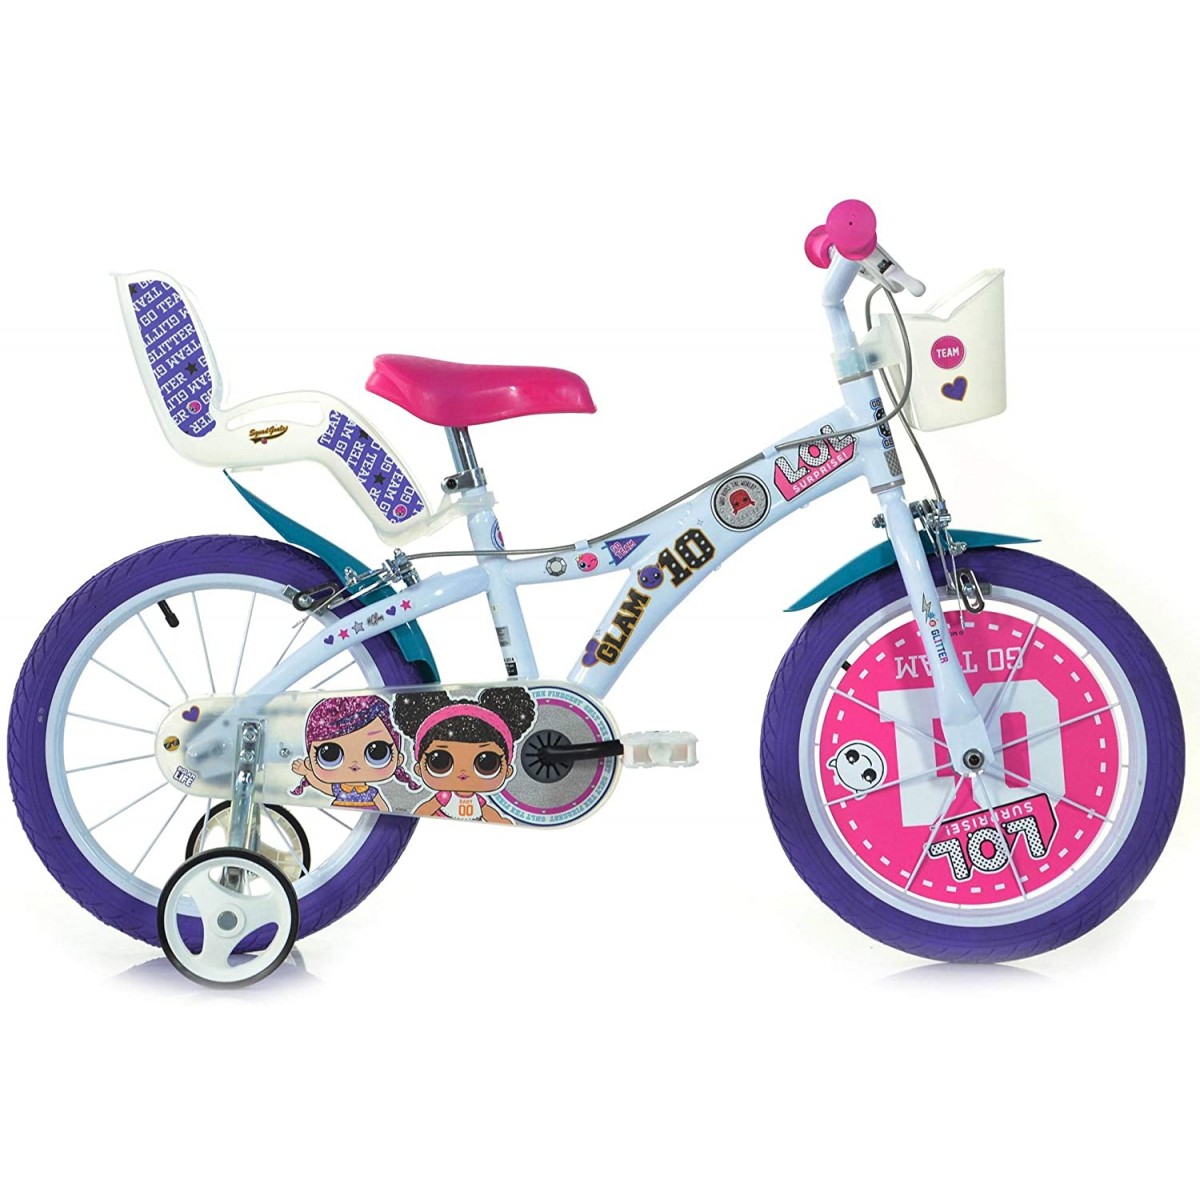 Bicicletta LOL Surprise da 16" per bambini colore viola e rosa